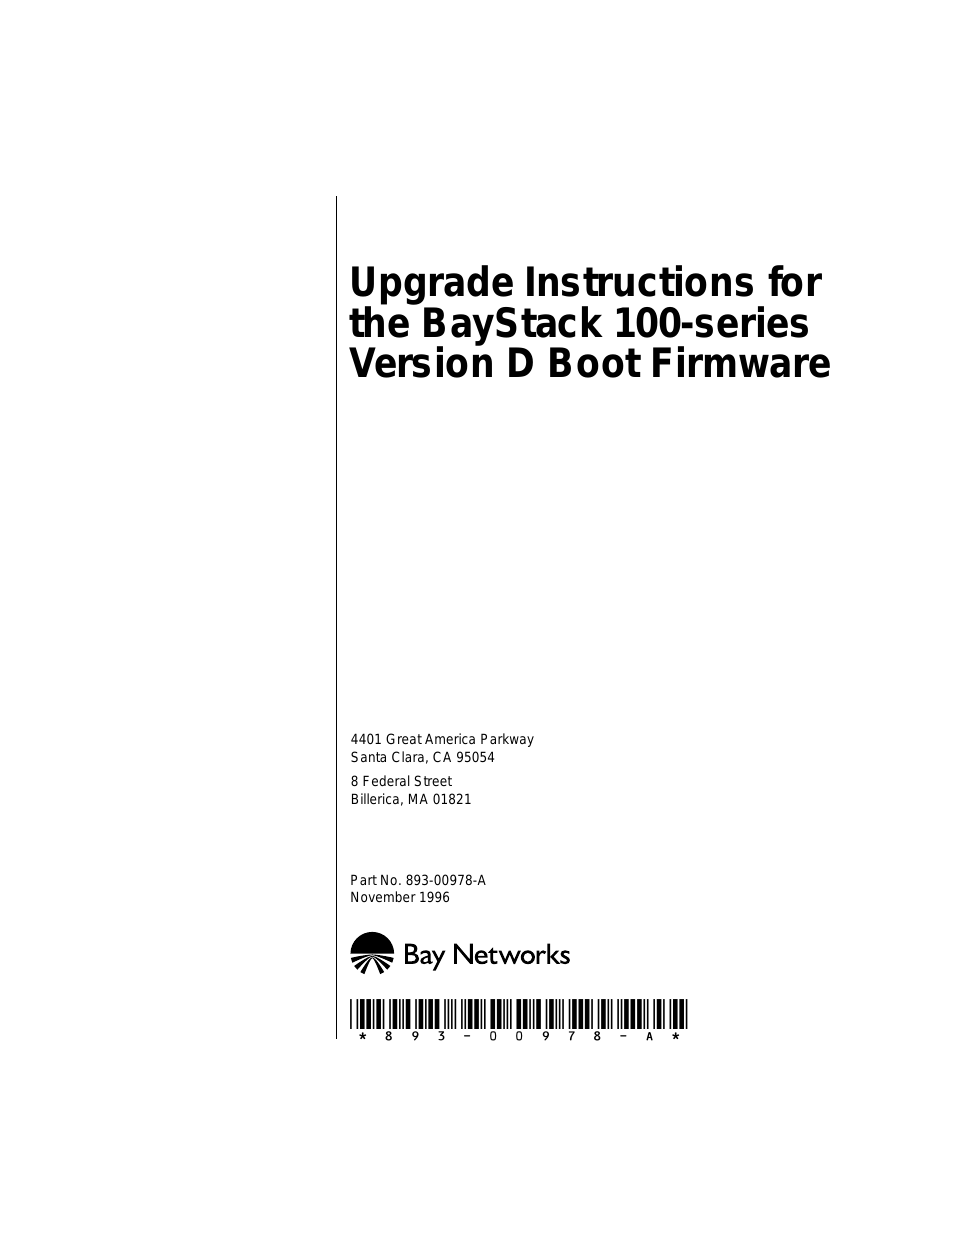 BayStack 100 Series